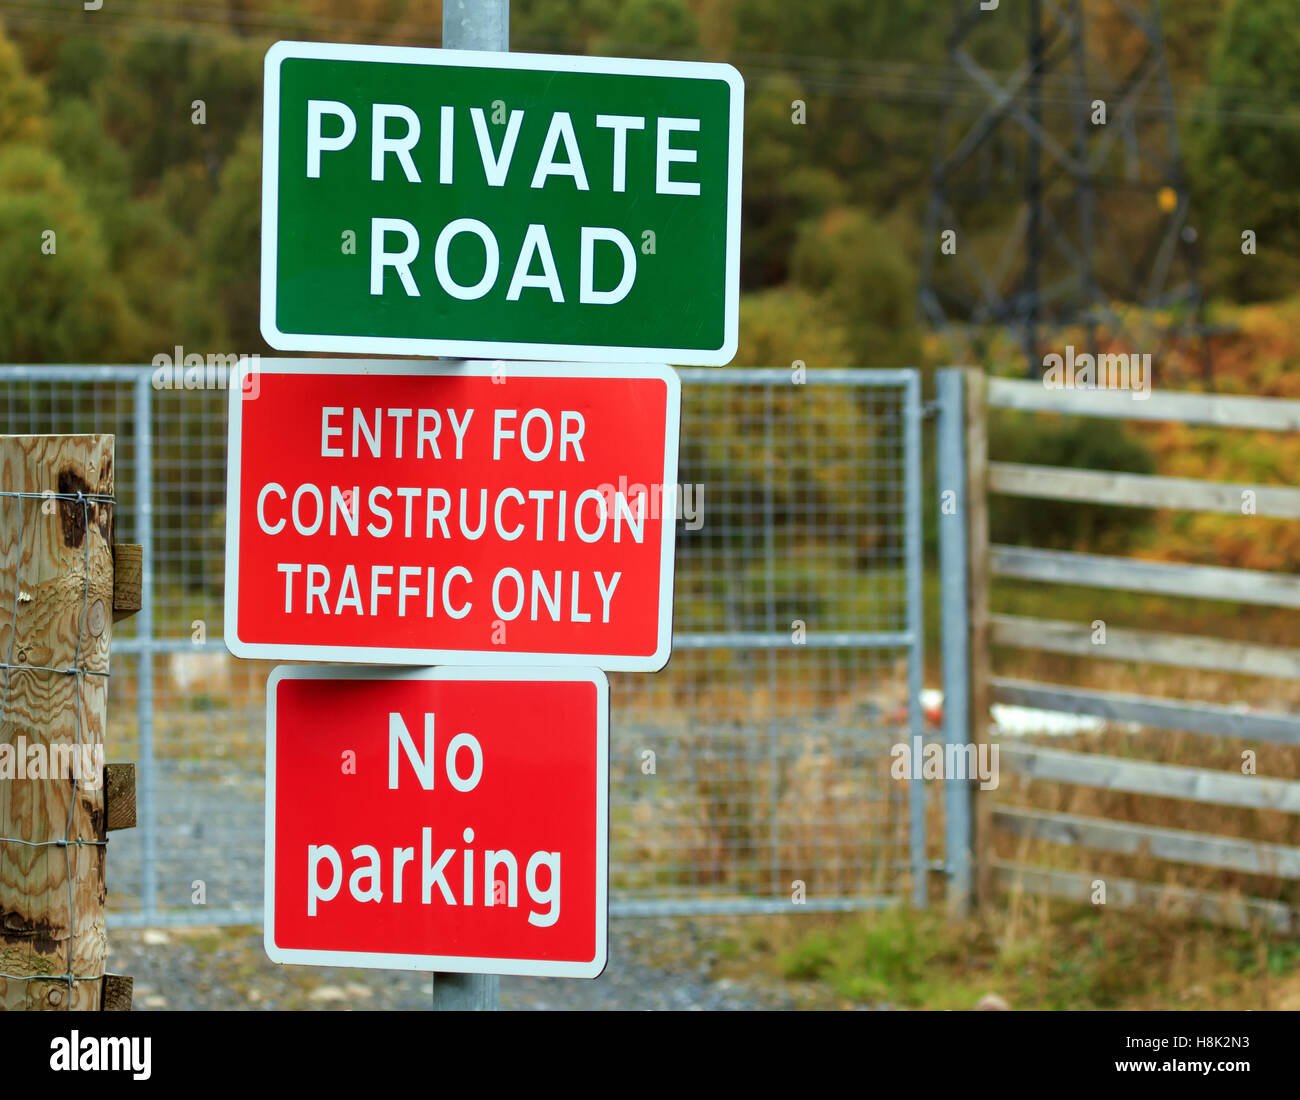 Drei Zeichen auf einem Pfosten für Private Road, No Parking und Eintrag für Bau-Verkehr Stockfoto